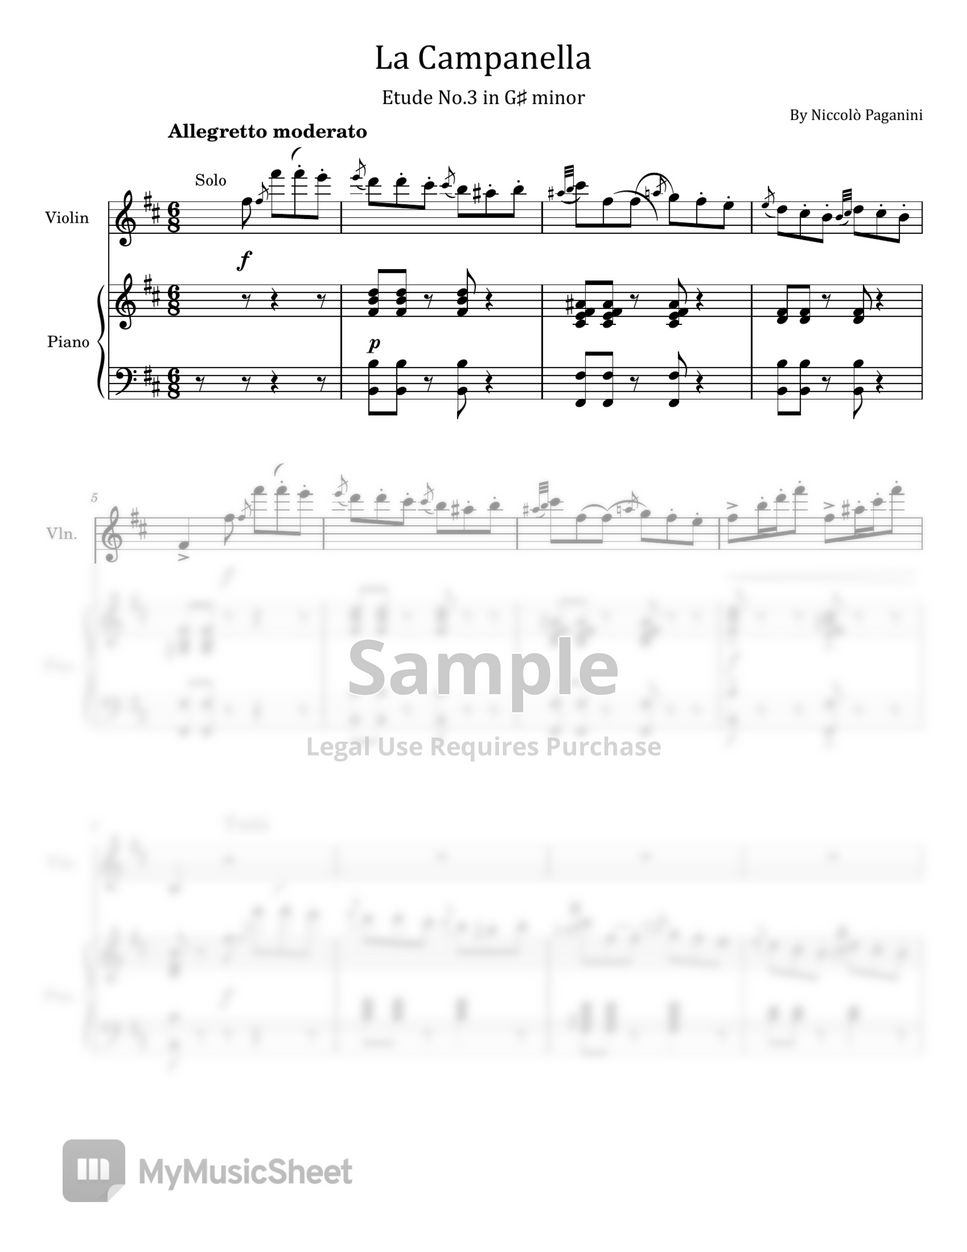 Niccolò Paganini/Franz Liszt - La Campanella (Etude No.3 in G# minor - For Violin and Piano) by poon